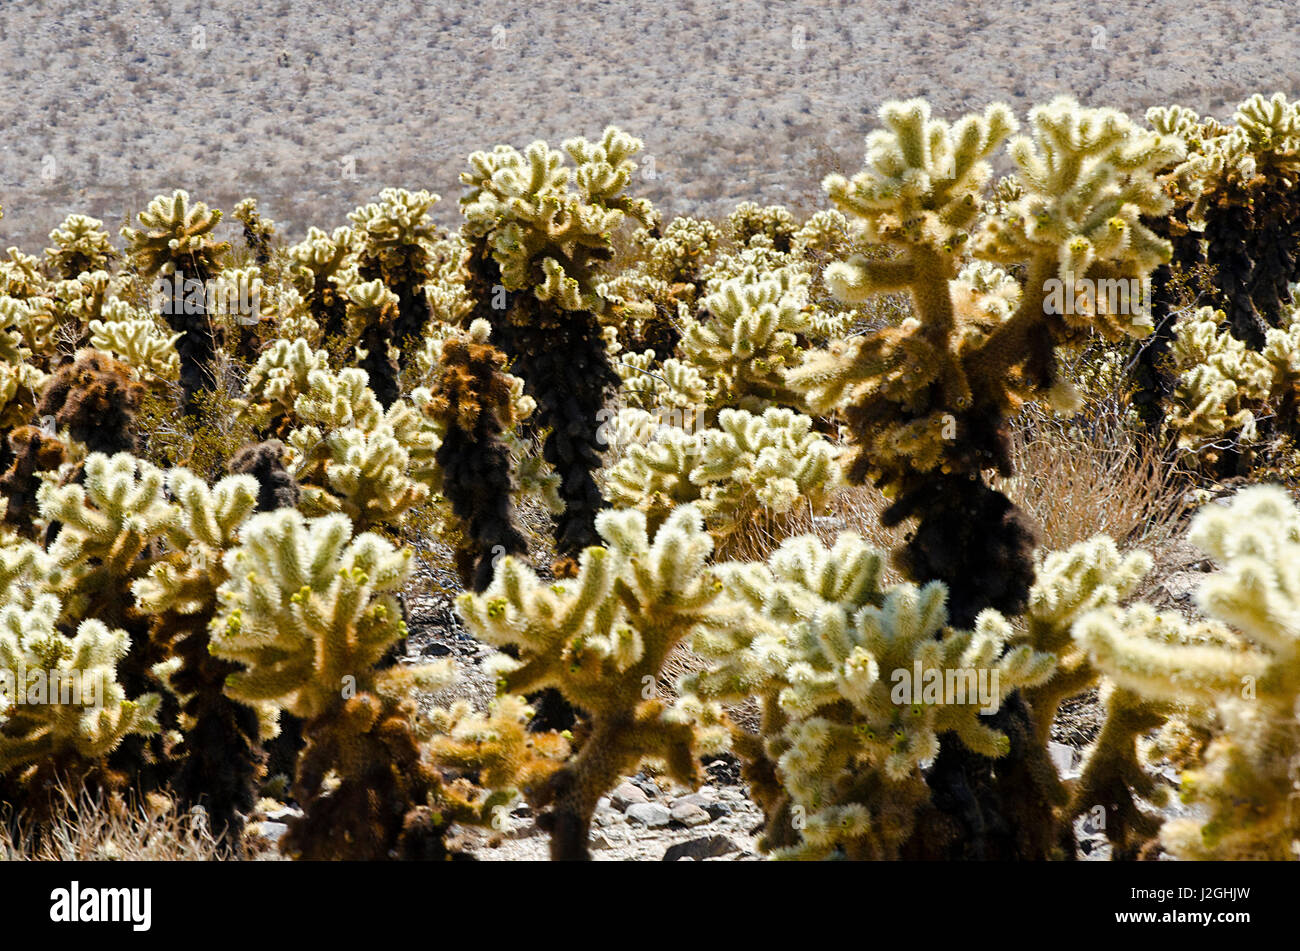 USA, California, Joshua Tree National Park, Cholla Cactus Garden in the Pinto Basin Stock Photo